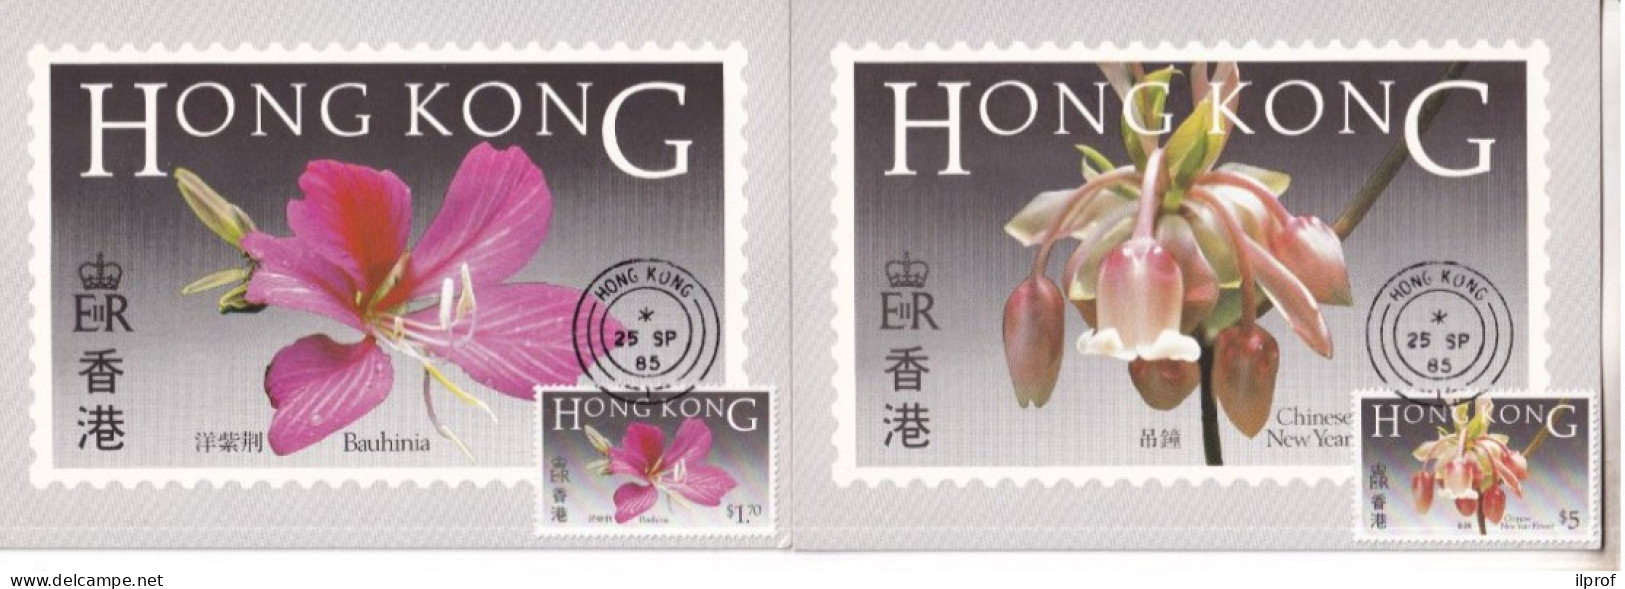 Flowers Of Hong Kong - 6 Maximum Cards 1985  Rif. S358 - Cartes-maximum